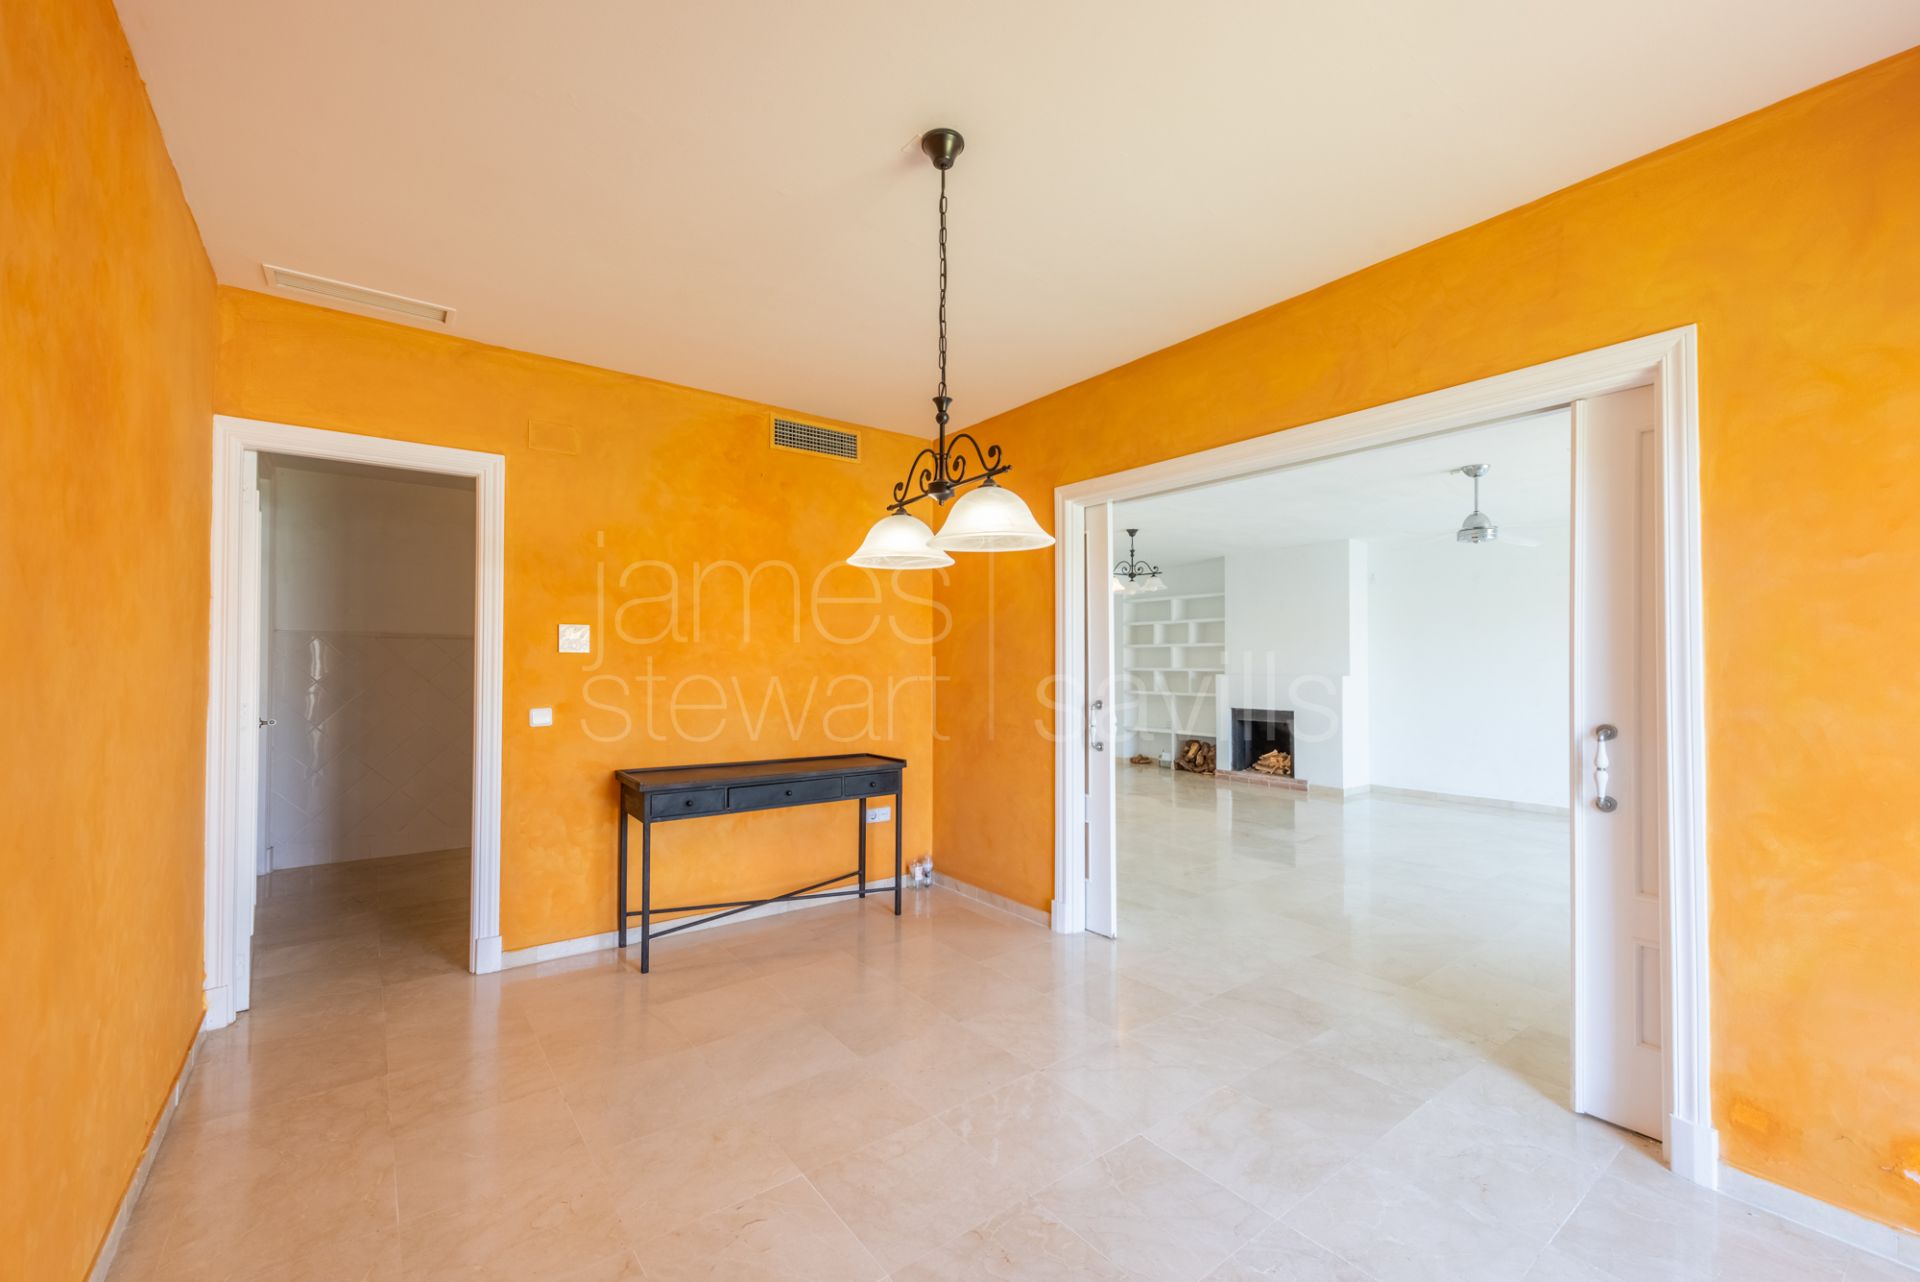 6-Bedroom Marina-Front Duplex in Ribera del Candil, Near the Beach in Sotogrande